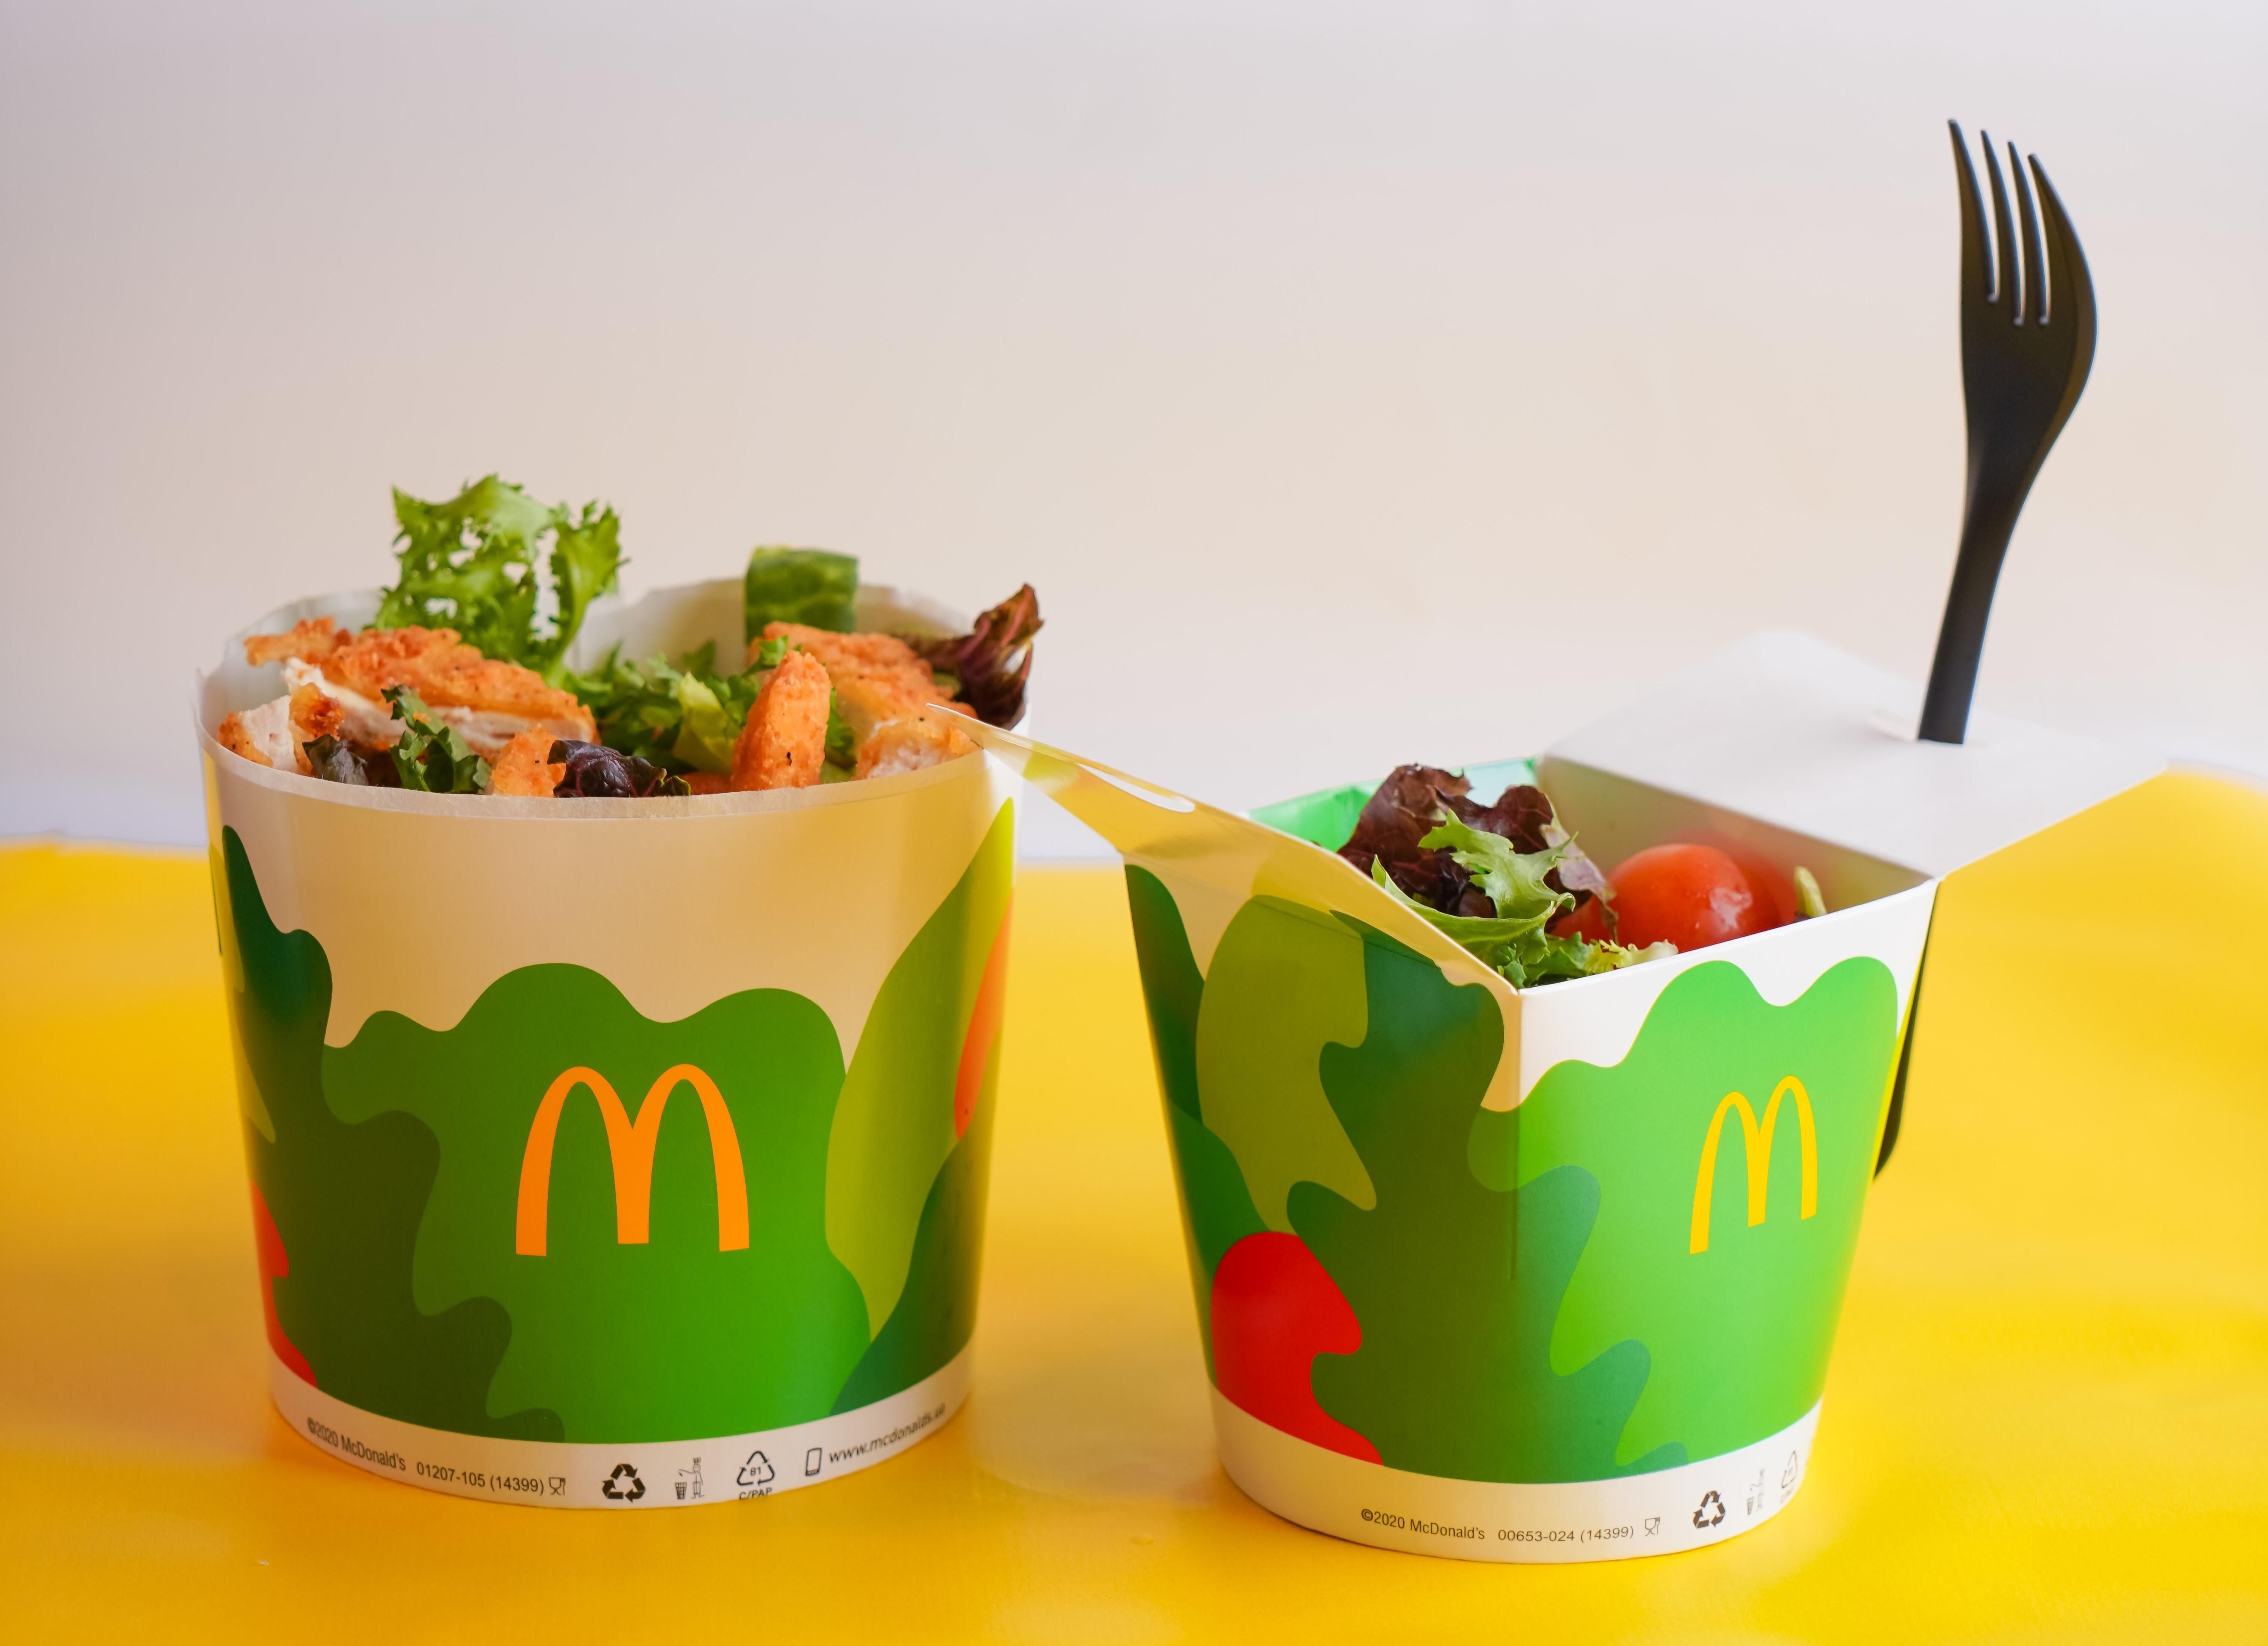 Легкие и питательные: что нужно знать о салатах в ресторанах McDonald's - Тренды